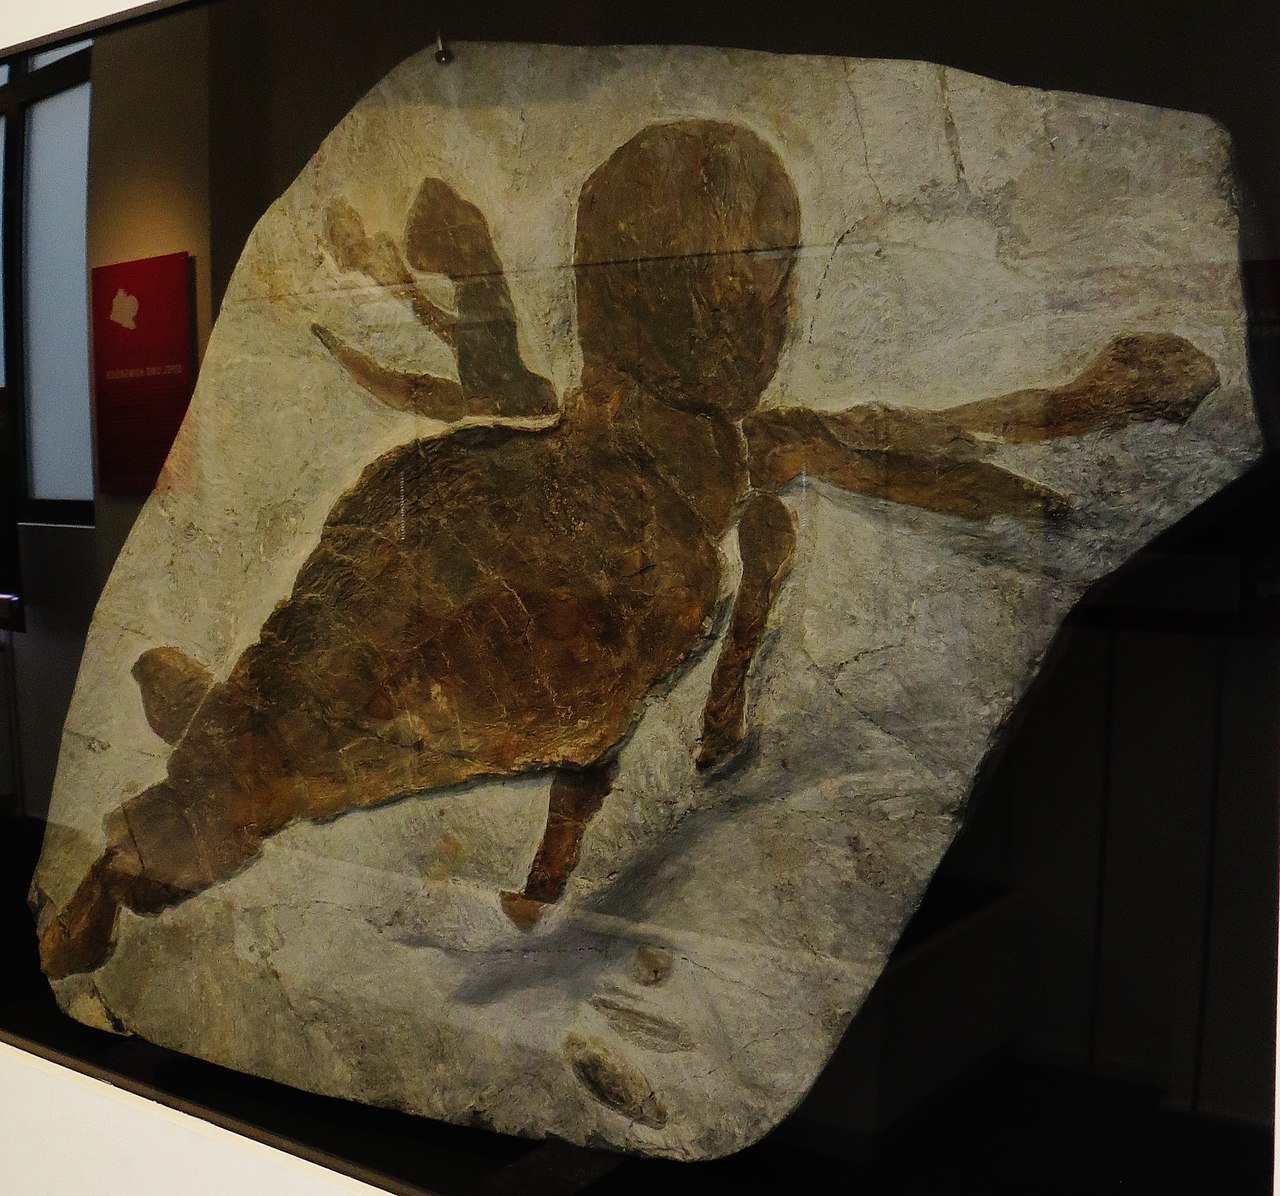 Fossilized Jaekelopterus